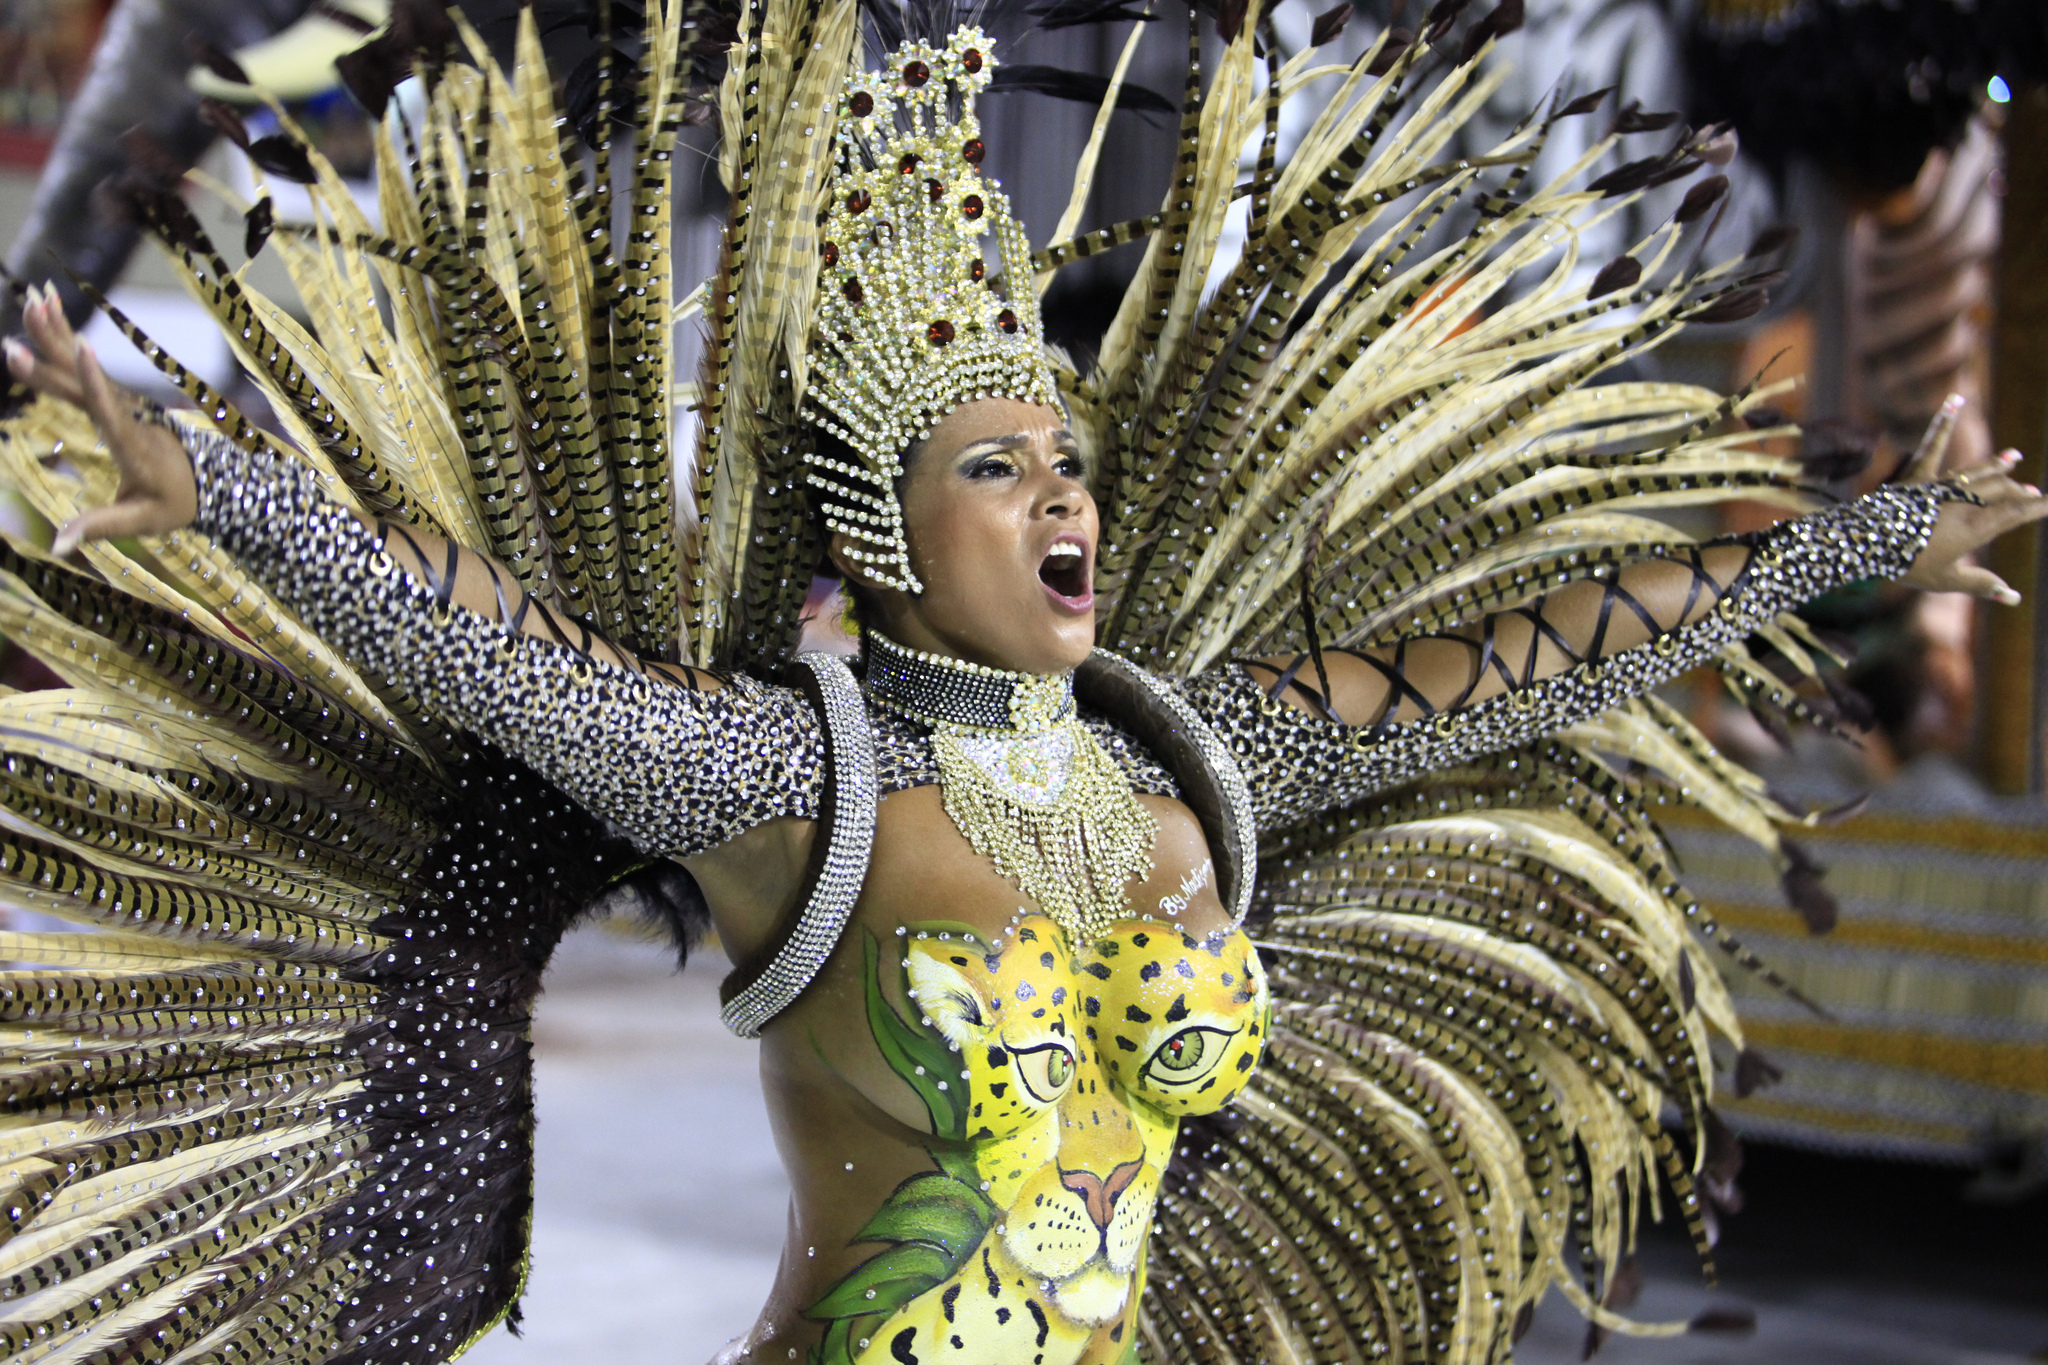 https://www.artur.lv/wp-content/uploads/2014/03/escola-uniao-de-jacarepagua-carnaval-Rio-de-Janeiro201403010003.jpg